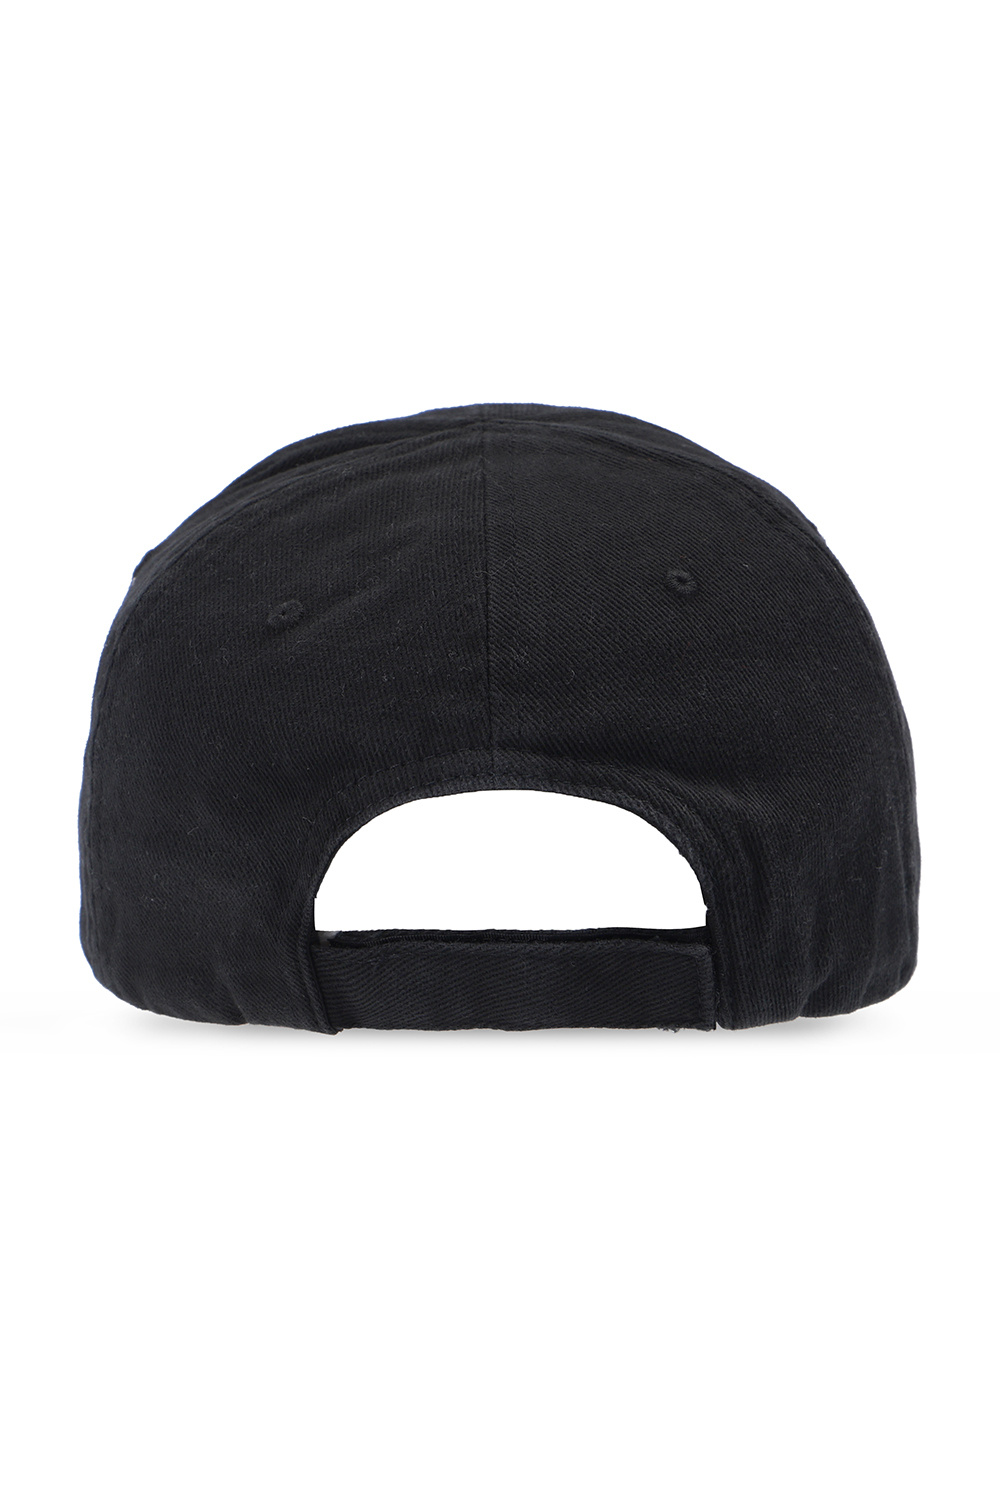 logo | buy Balenciaga logo | calvin Men\'s IetpShops patch with Baseball klein cap | cap Accessories